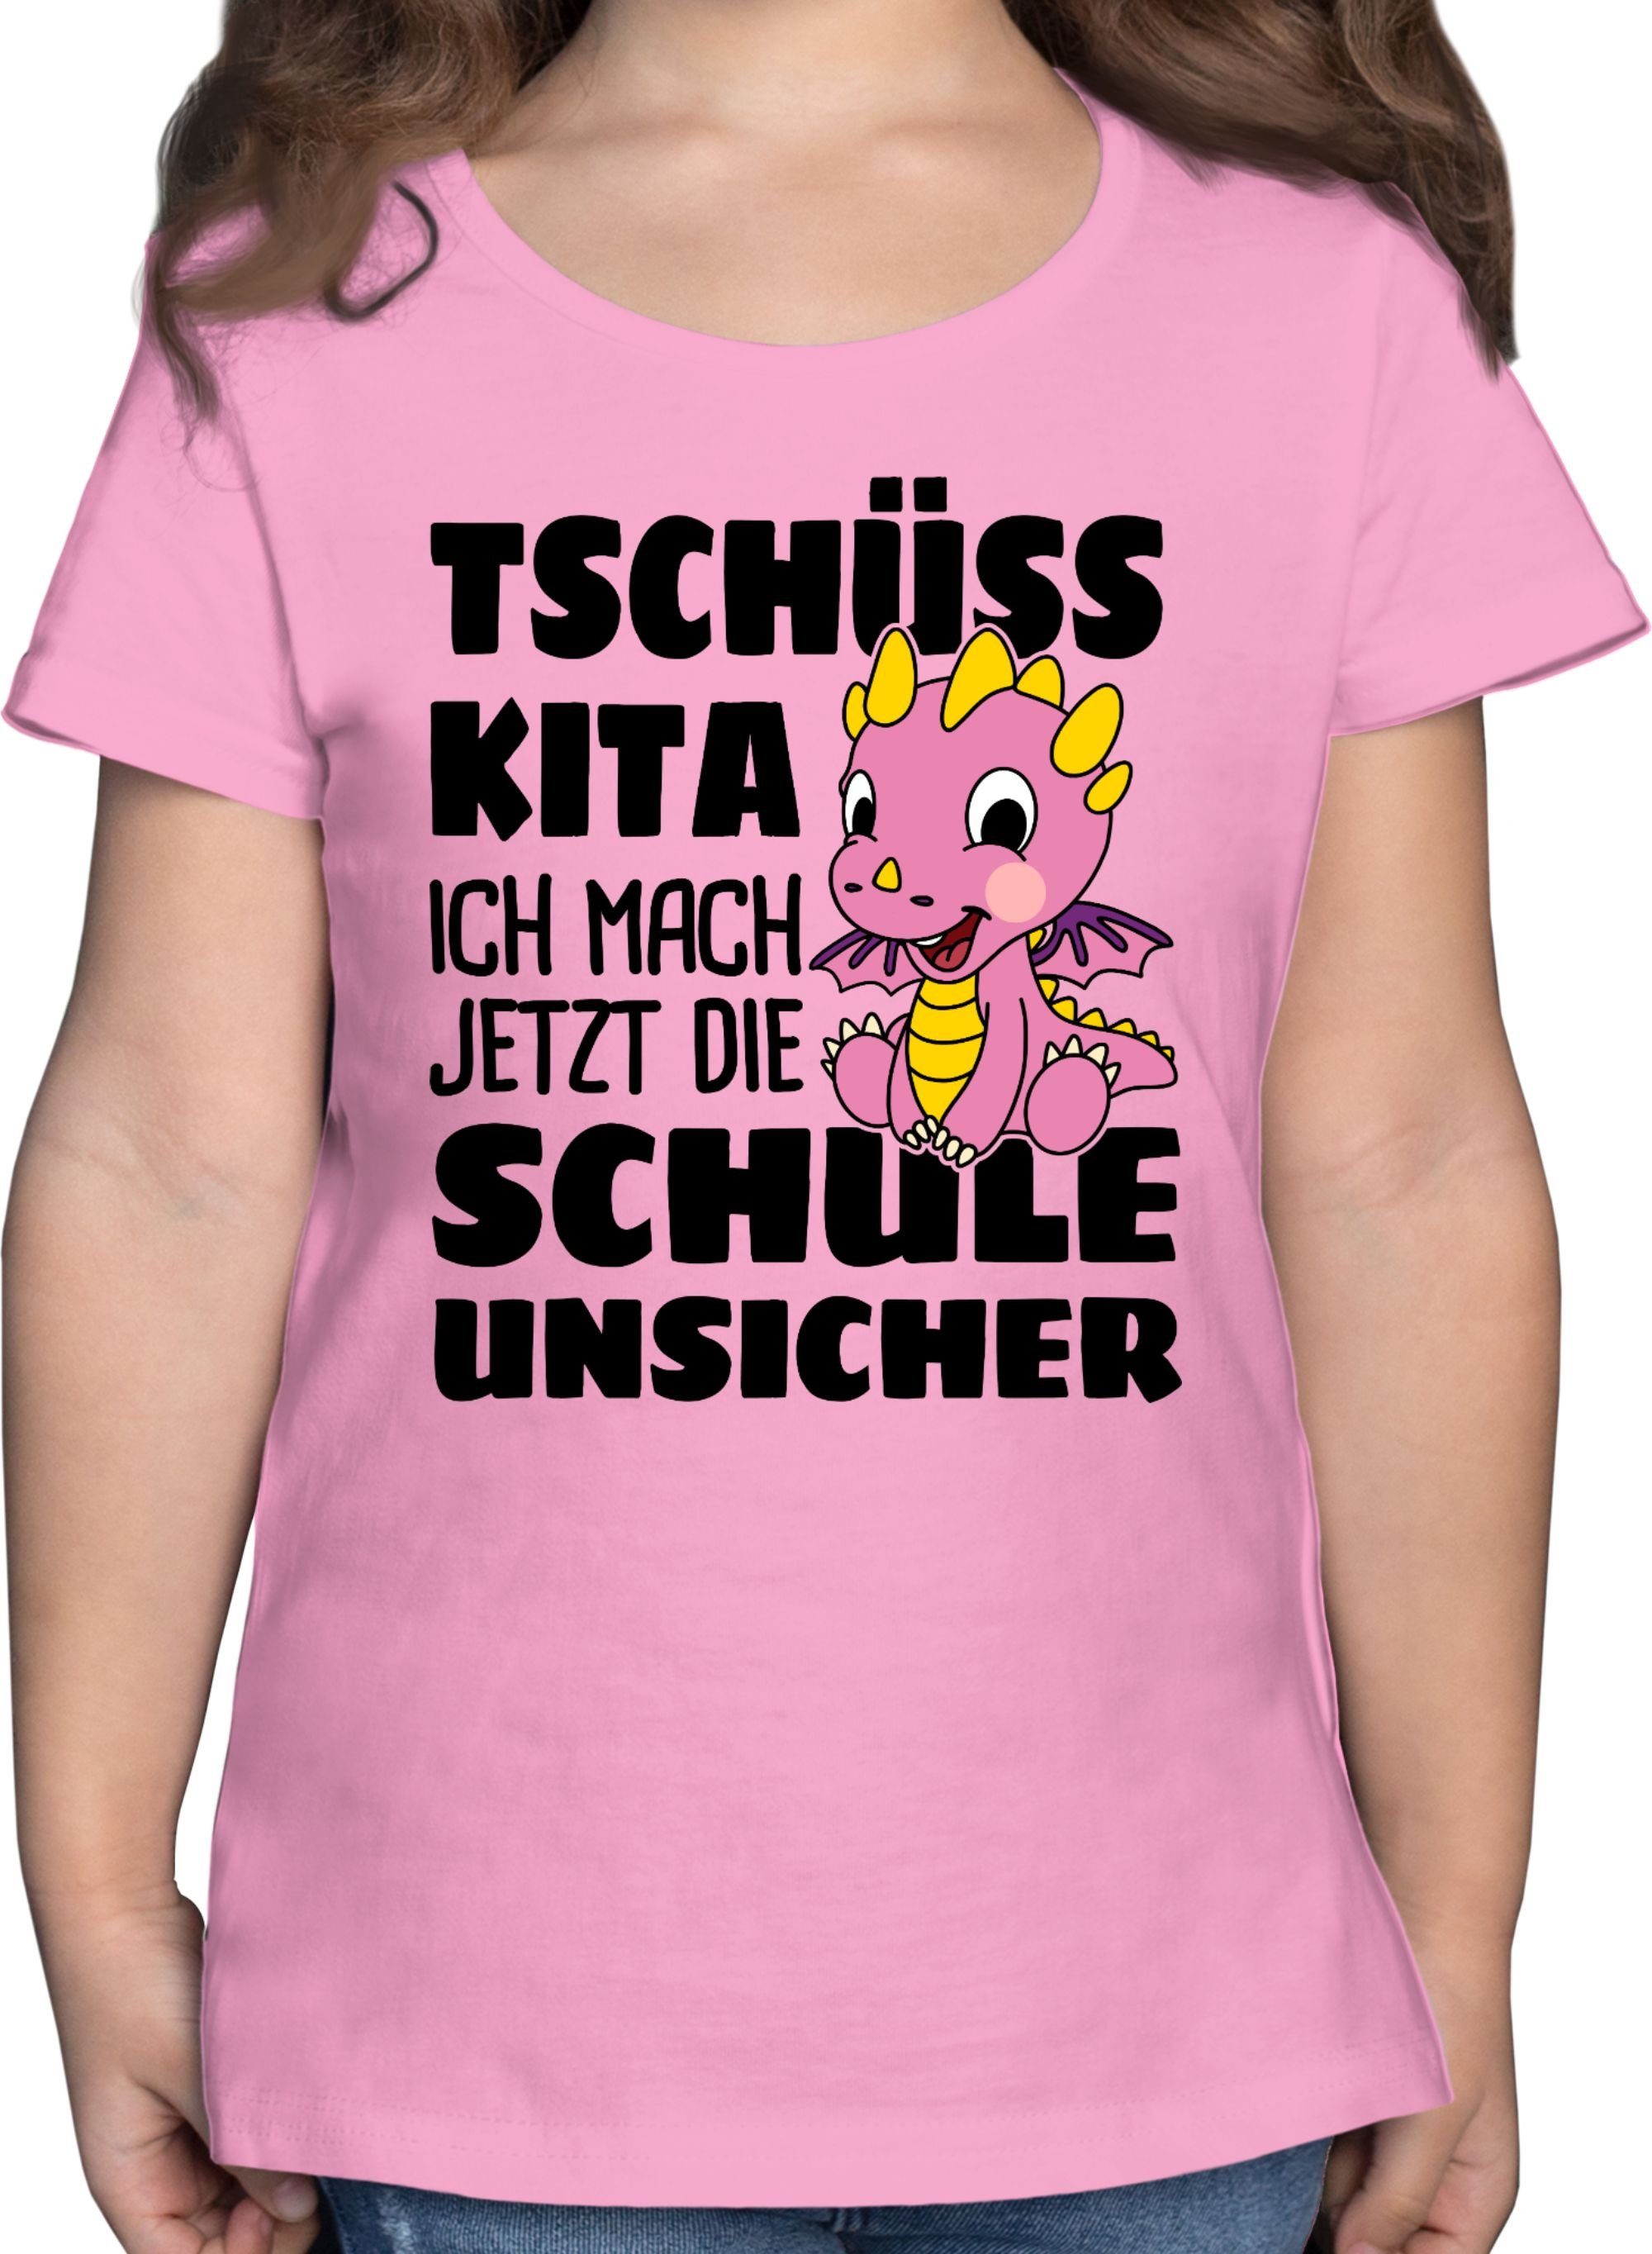 Top-Empfehlung Shirtracer T-Shirt Tschüss Drachen Rosa Mit Kita mach 2 die Mädchen unsicher! jetzt Einschulung rosa ich Schule